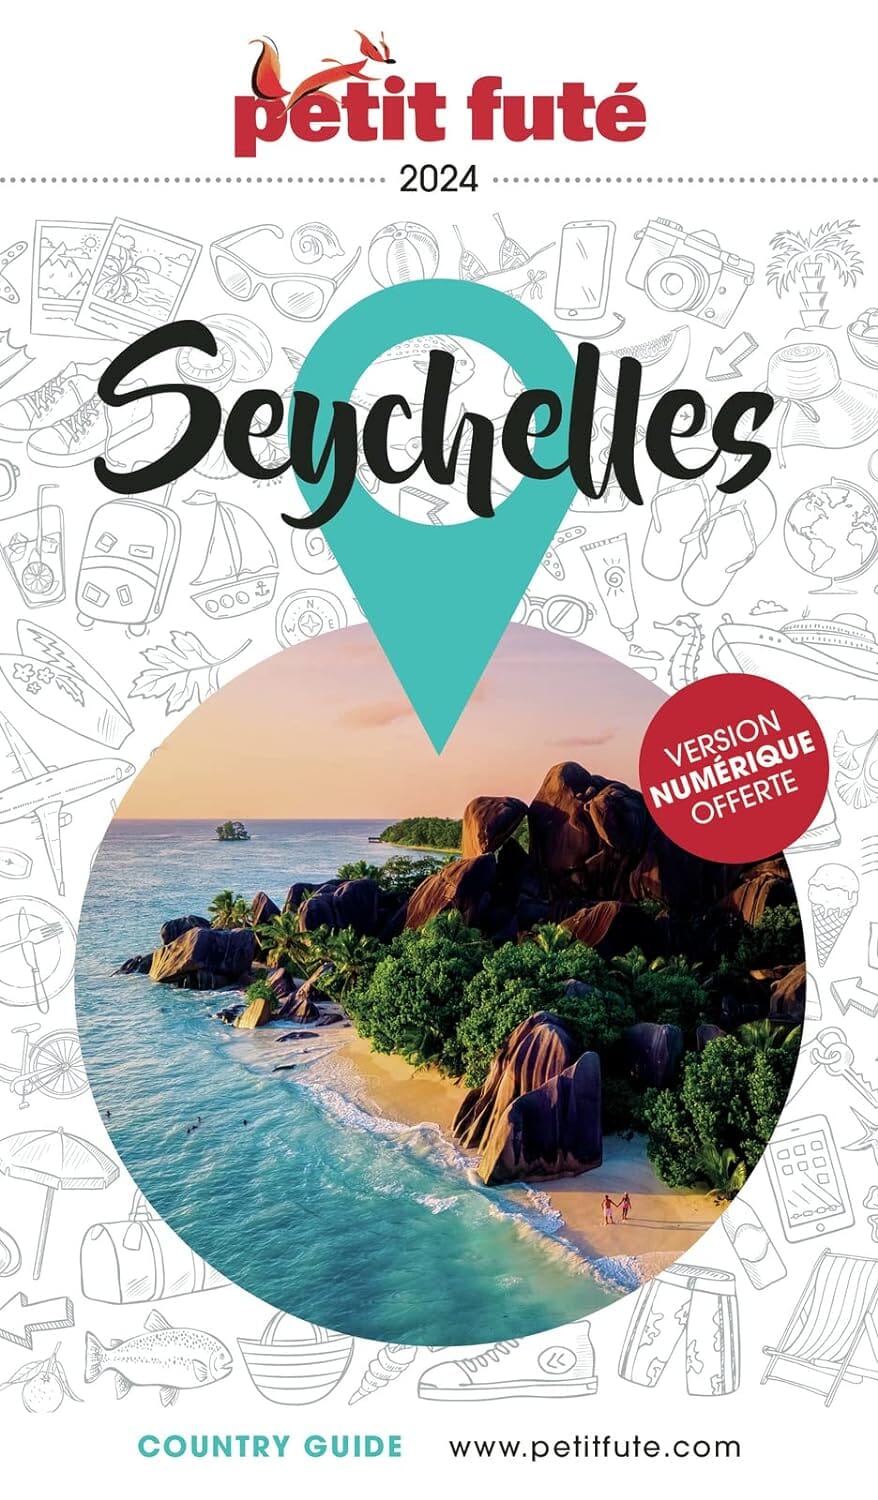 Guide de voyage - Seychelles 2024 | Petit Futé guide de voyage Petit Futé 